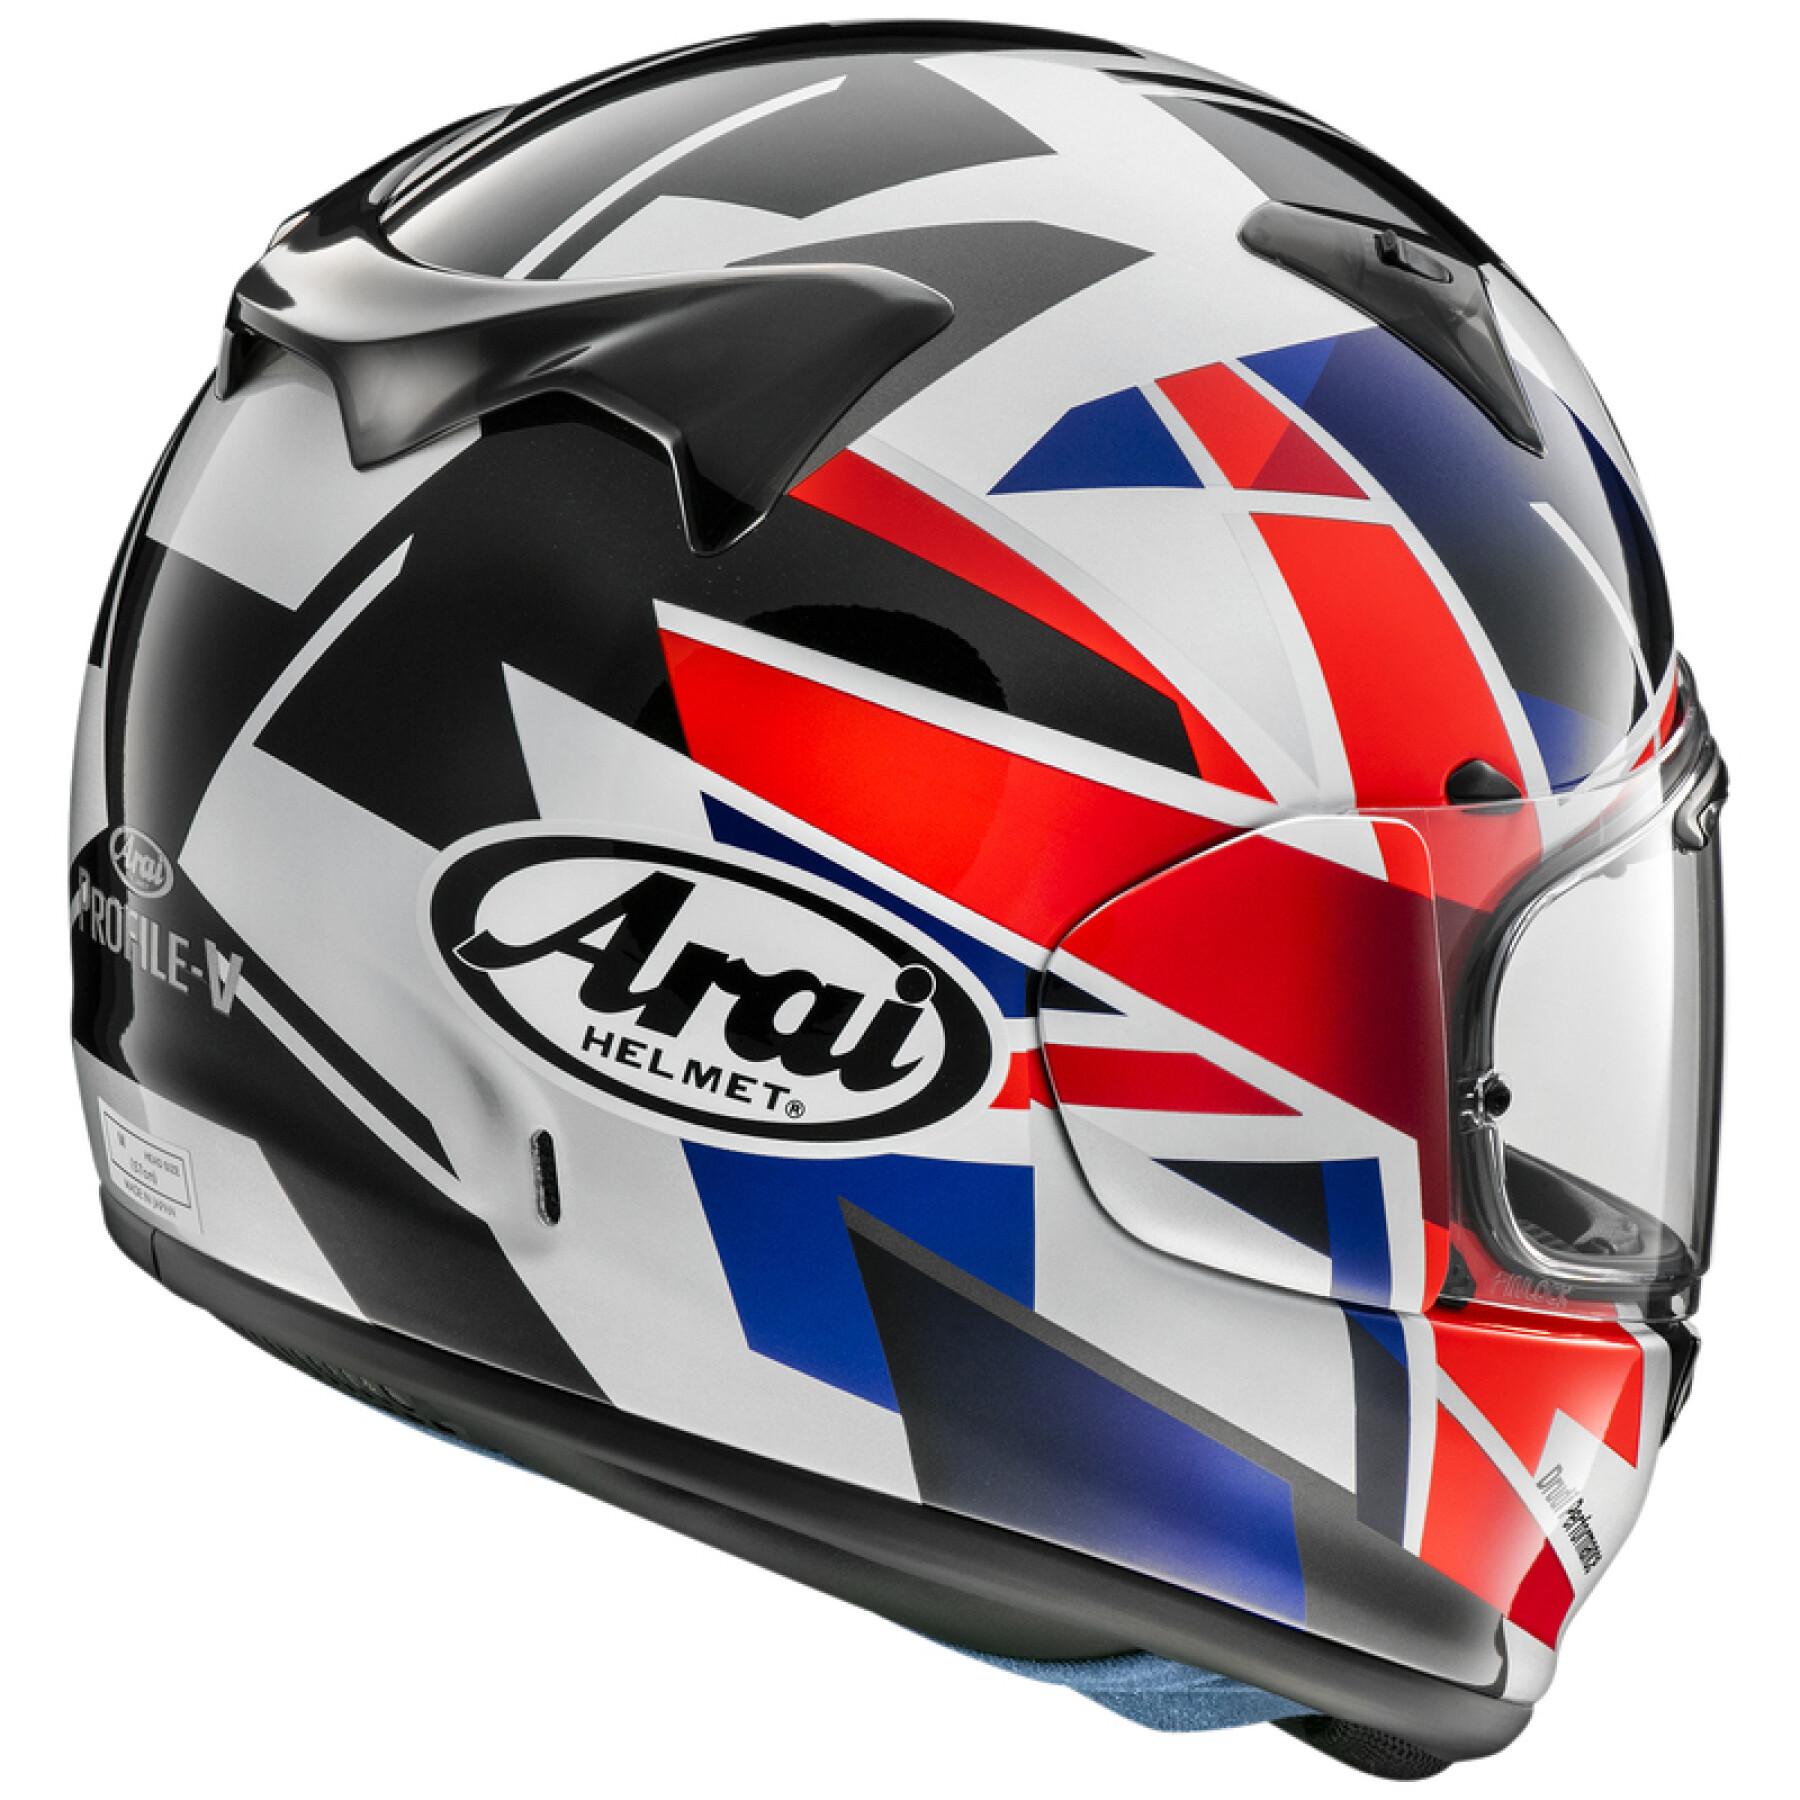 Full face motorcycle helmet Arai V Flag UK